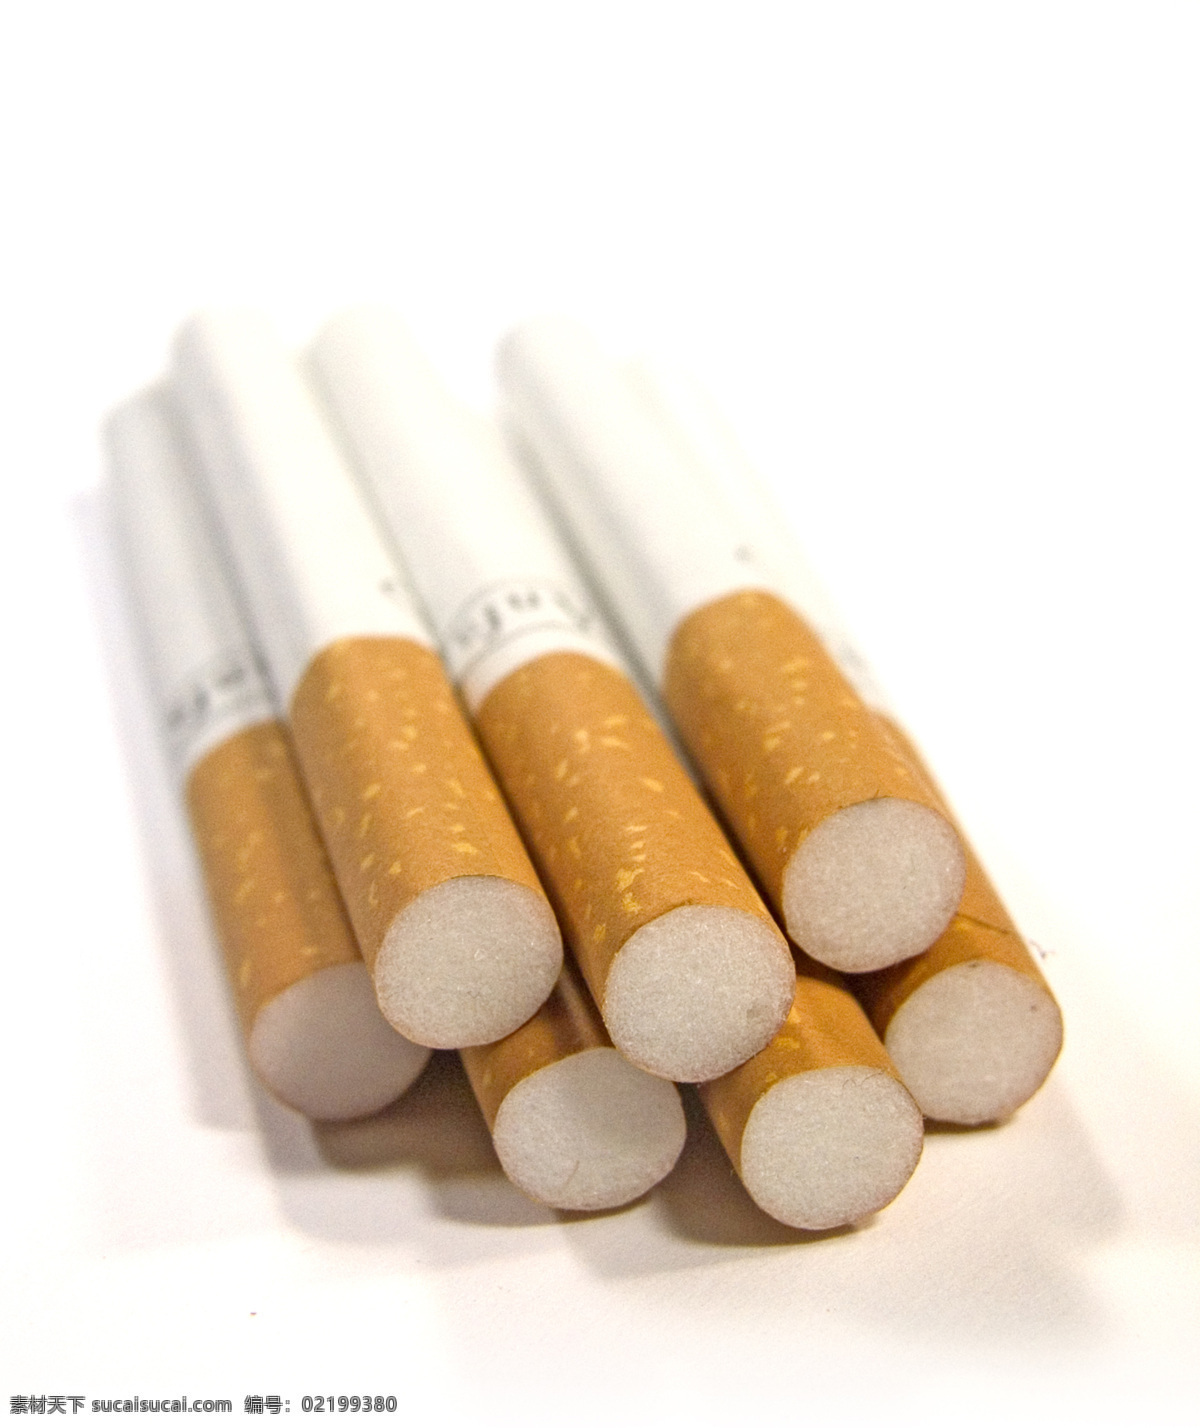 香烟 公益 火柴 健康 生活百科 生活素材 危害 烟 健康公益素材 展板 公益展板设计